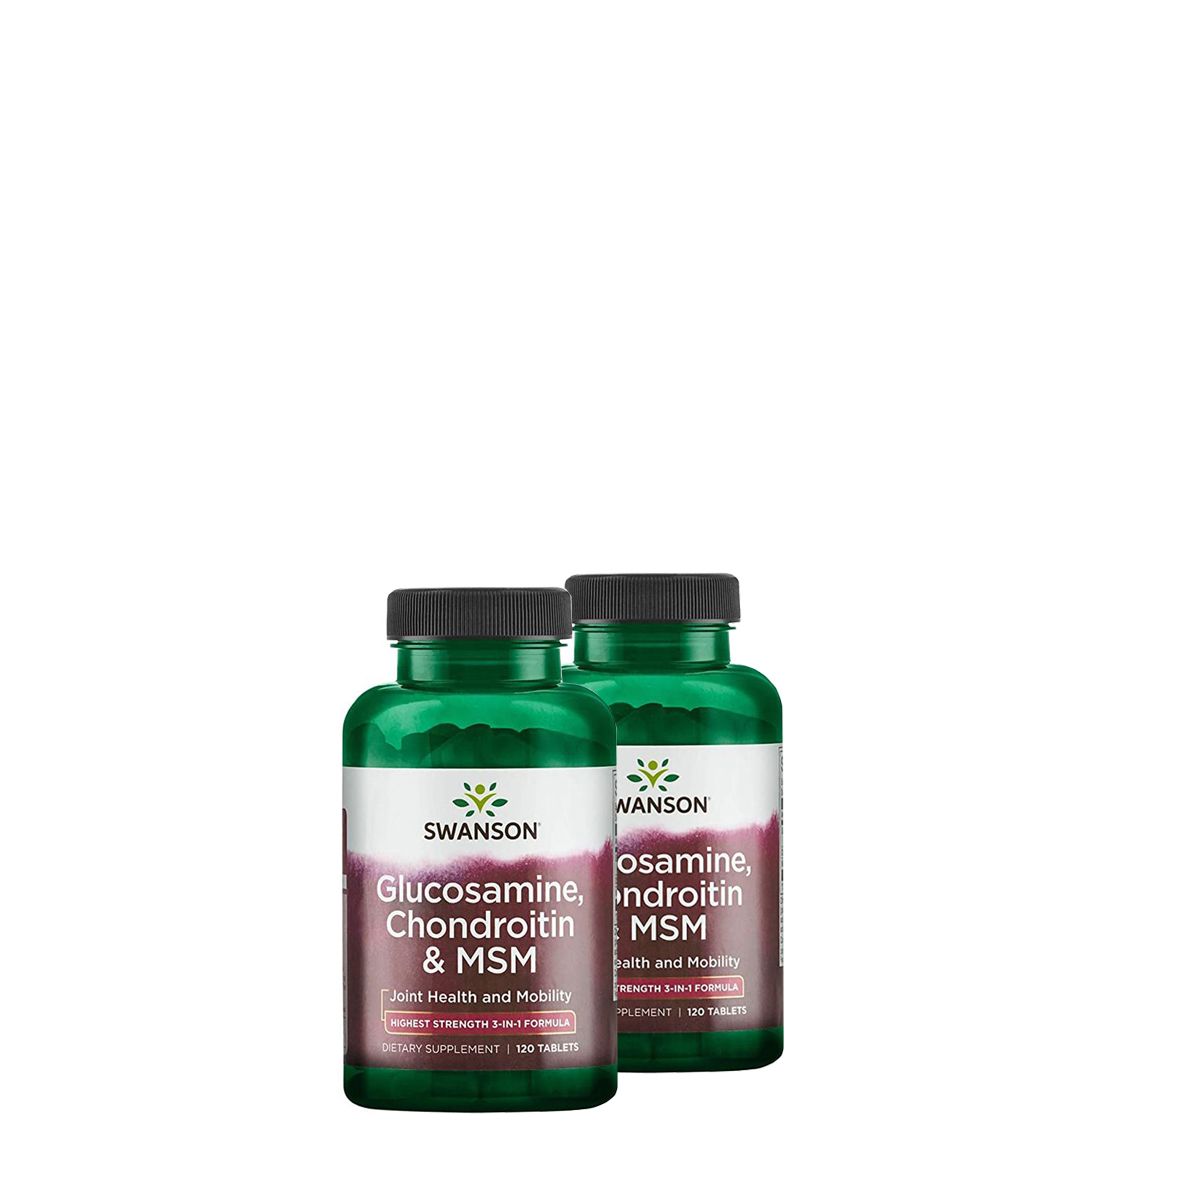 Ízületvédő komplex, Swanson Glucosamine Chondroitin & MSM, 2x120 tabletta